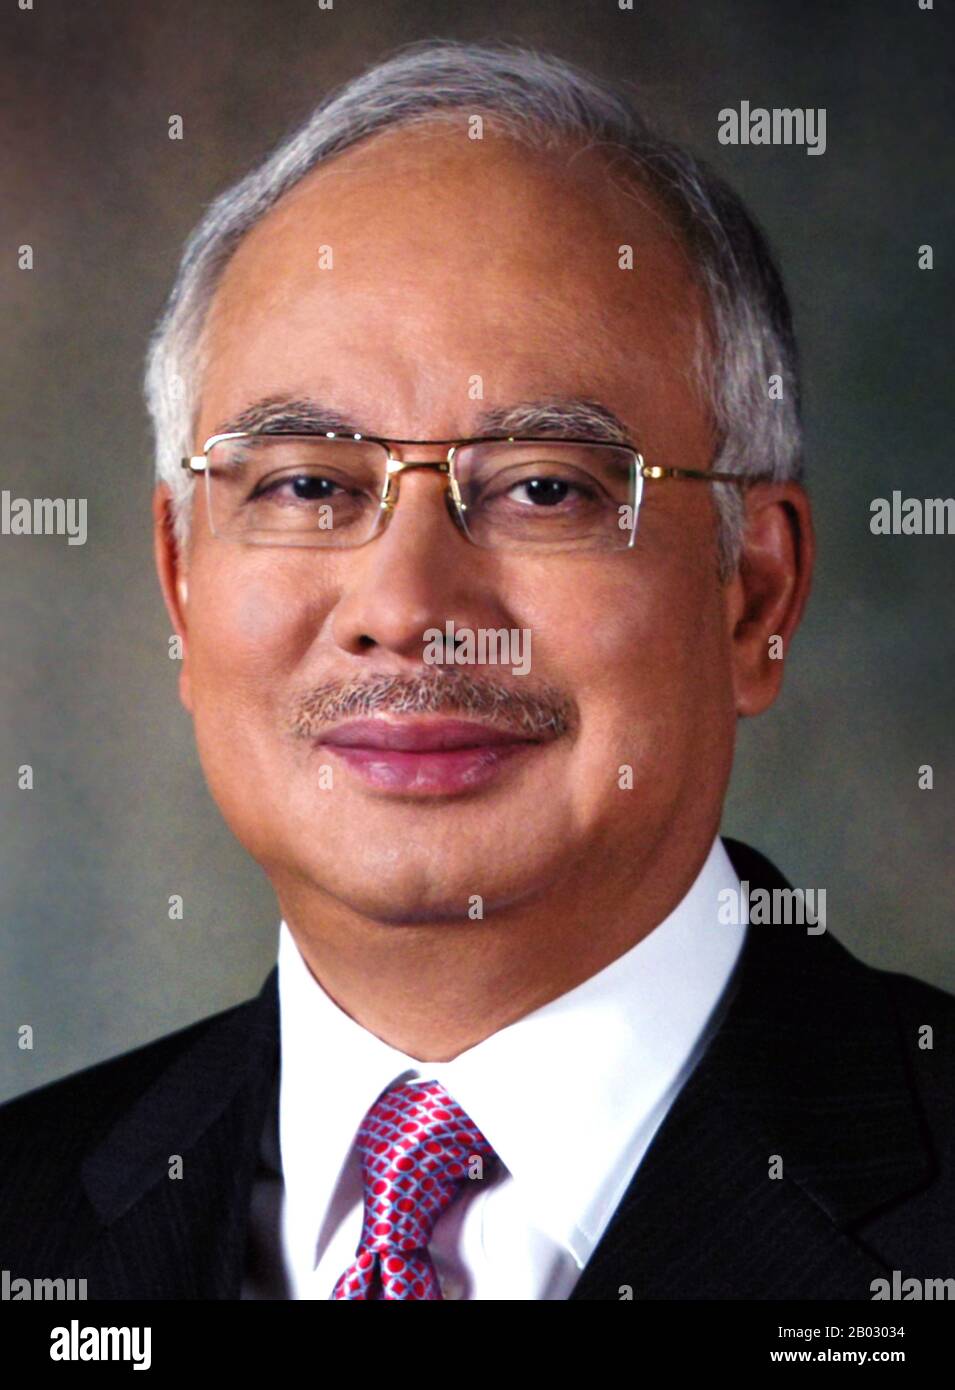 Dato' Sri Haji Mohammad Najib bin Tun Haji Abdul Razak (* 23. Juli 1953) ist der sechste und aktuelle Premierminister von Malaysia. Er wurde am 3. April 2009 als Nachfolger von Abdullah Ahmad Badawi auf die Position vereidigt. Er ist Präsident der United Malays National Organization, der führenden Partei in der regierenden Barisan Nasional Koalition in Malaysia. Stockfoto